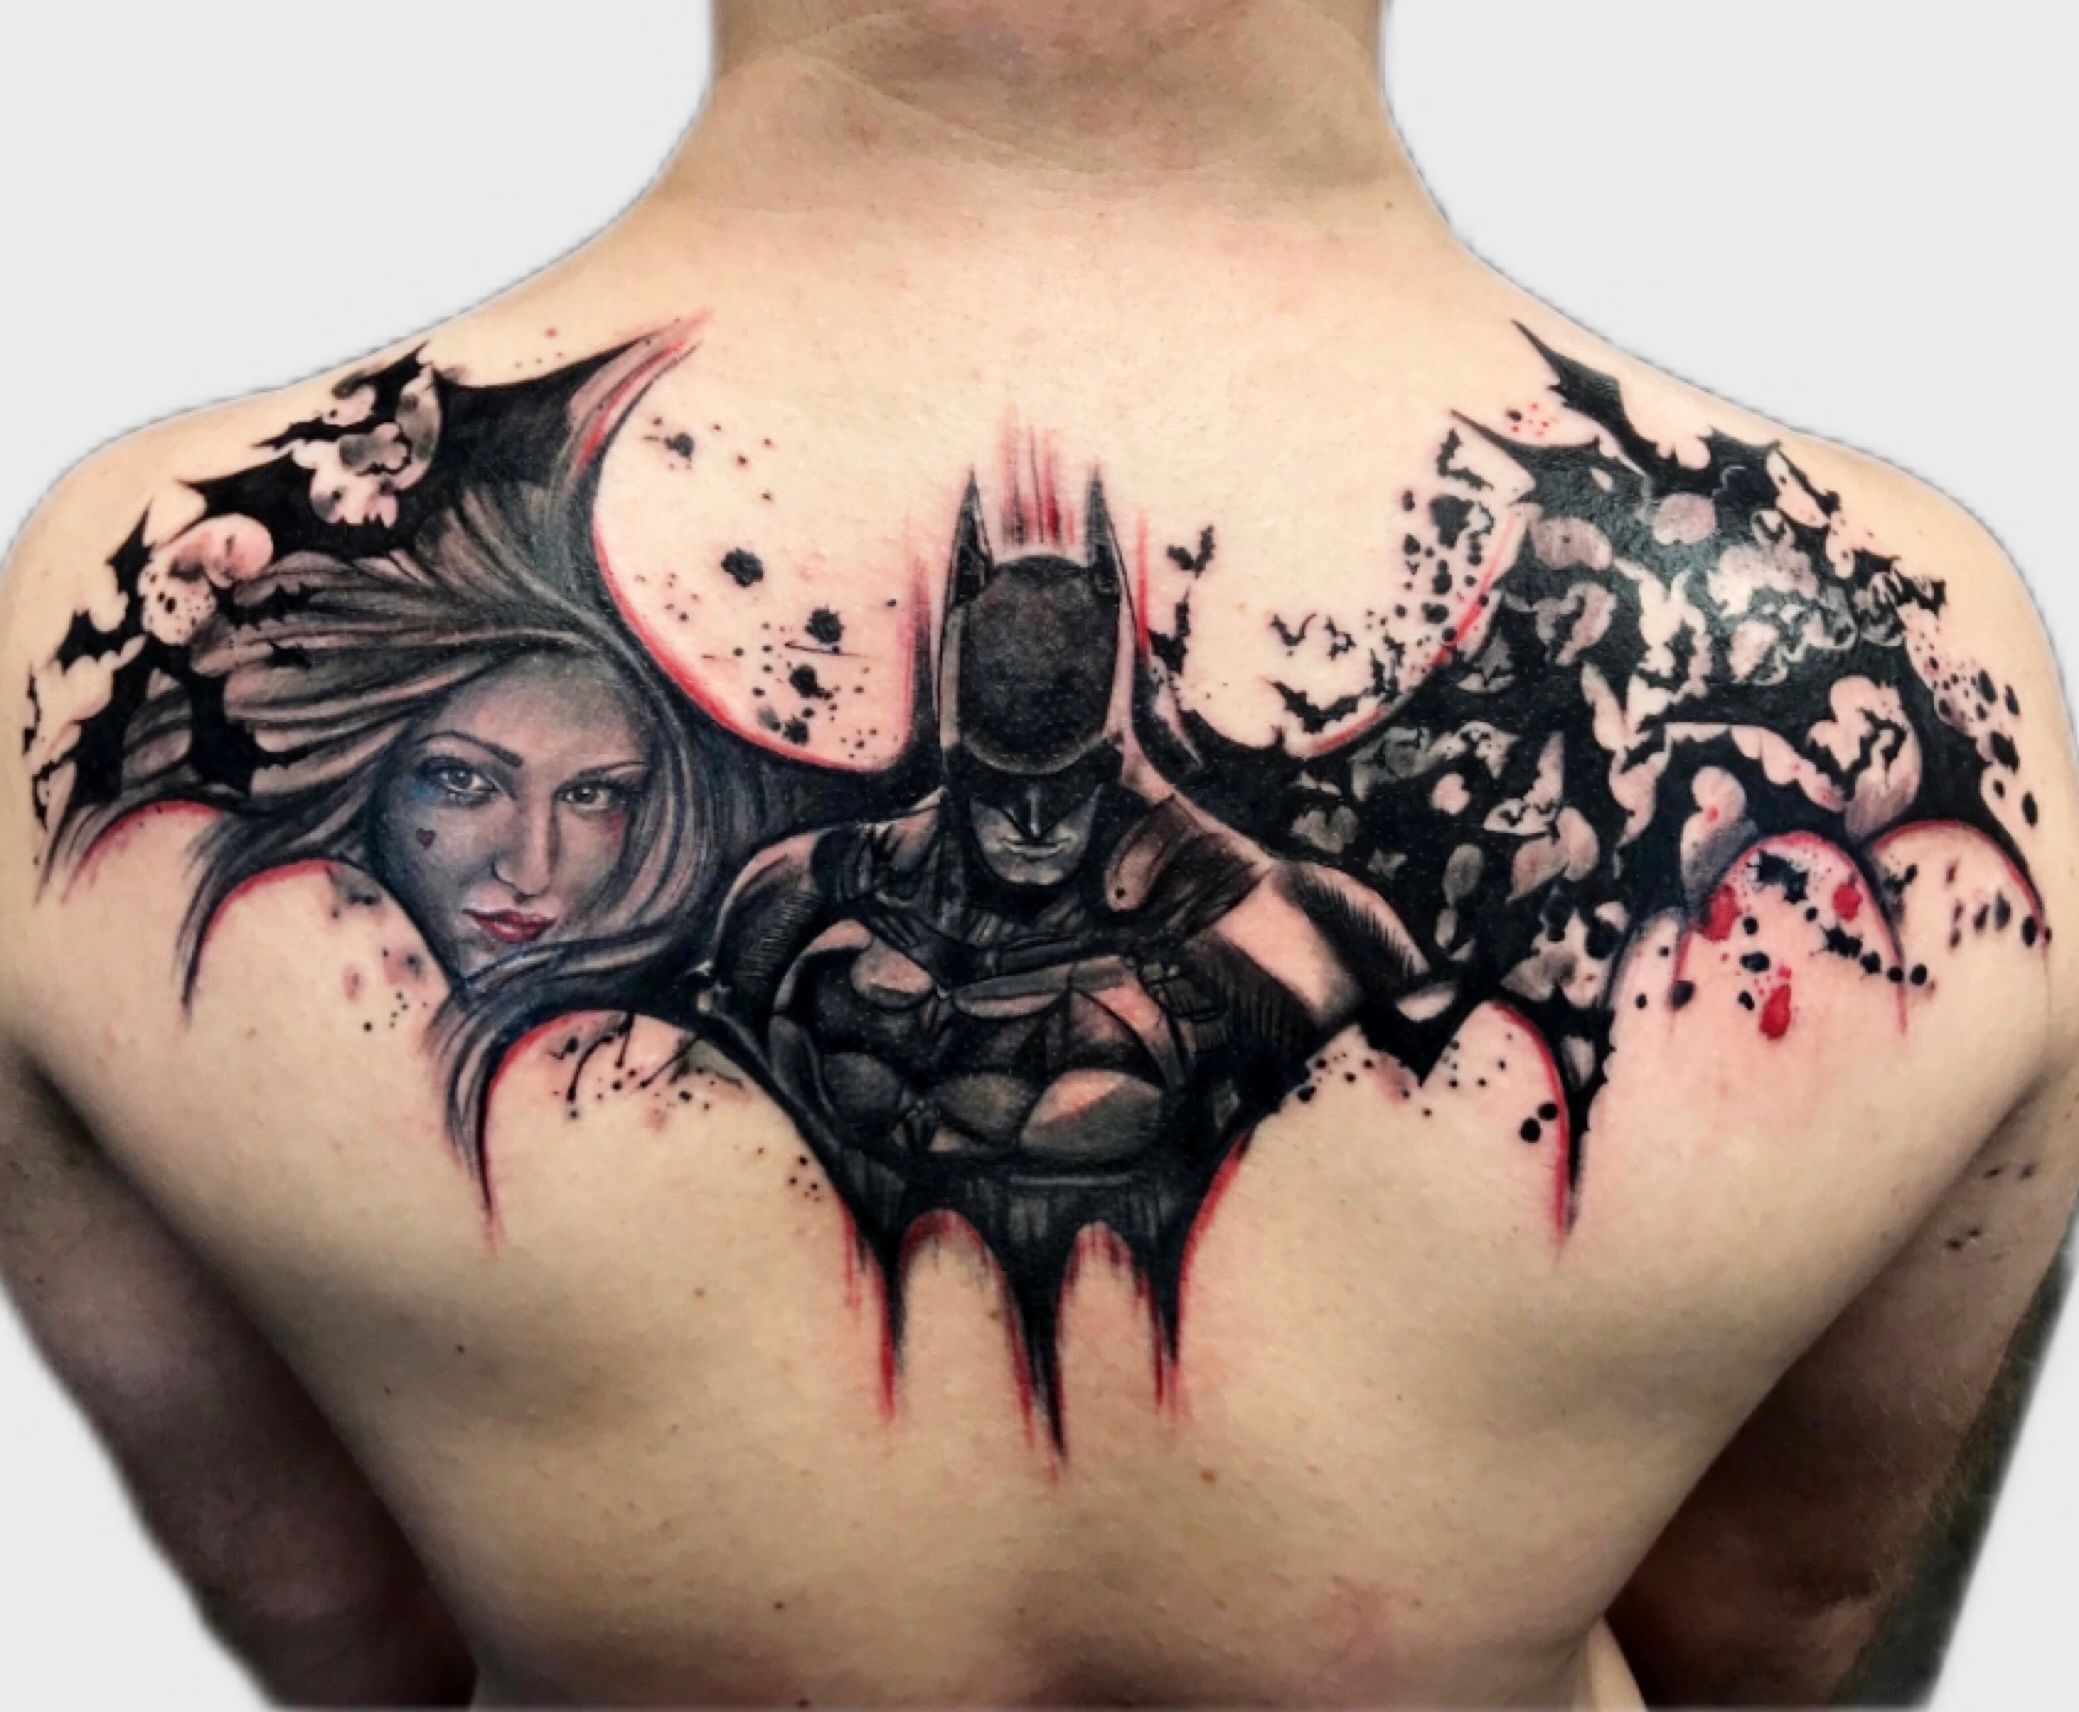 3d batman tattoo